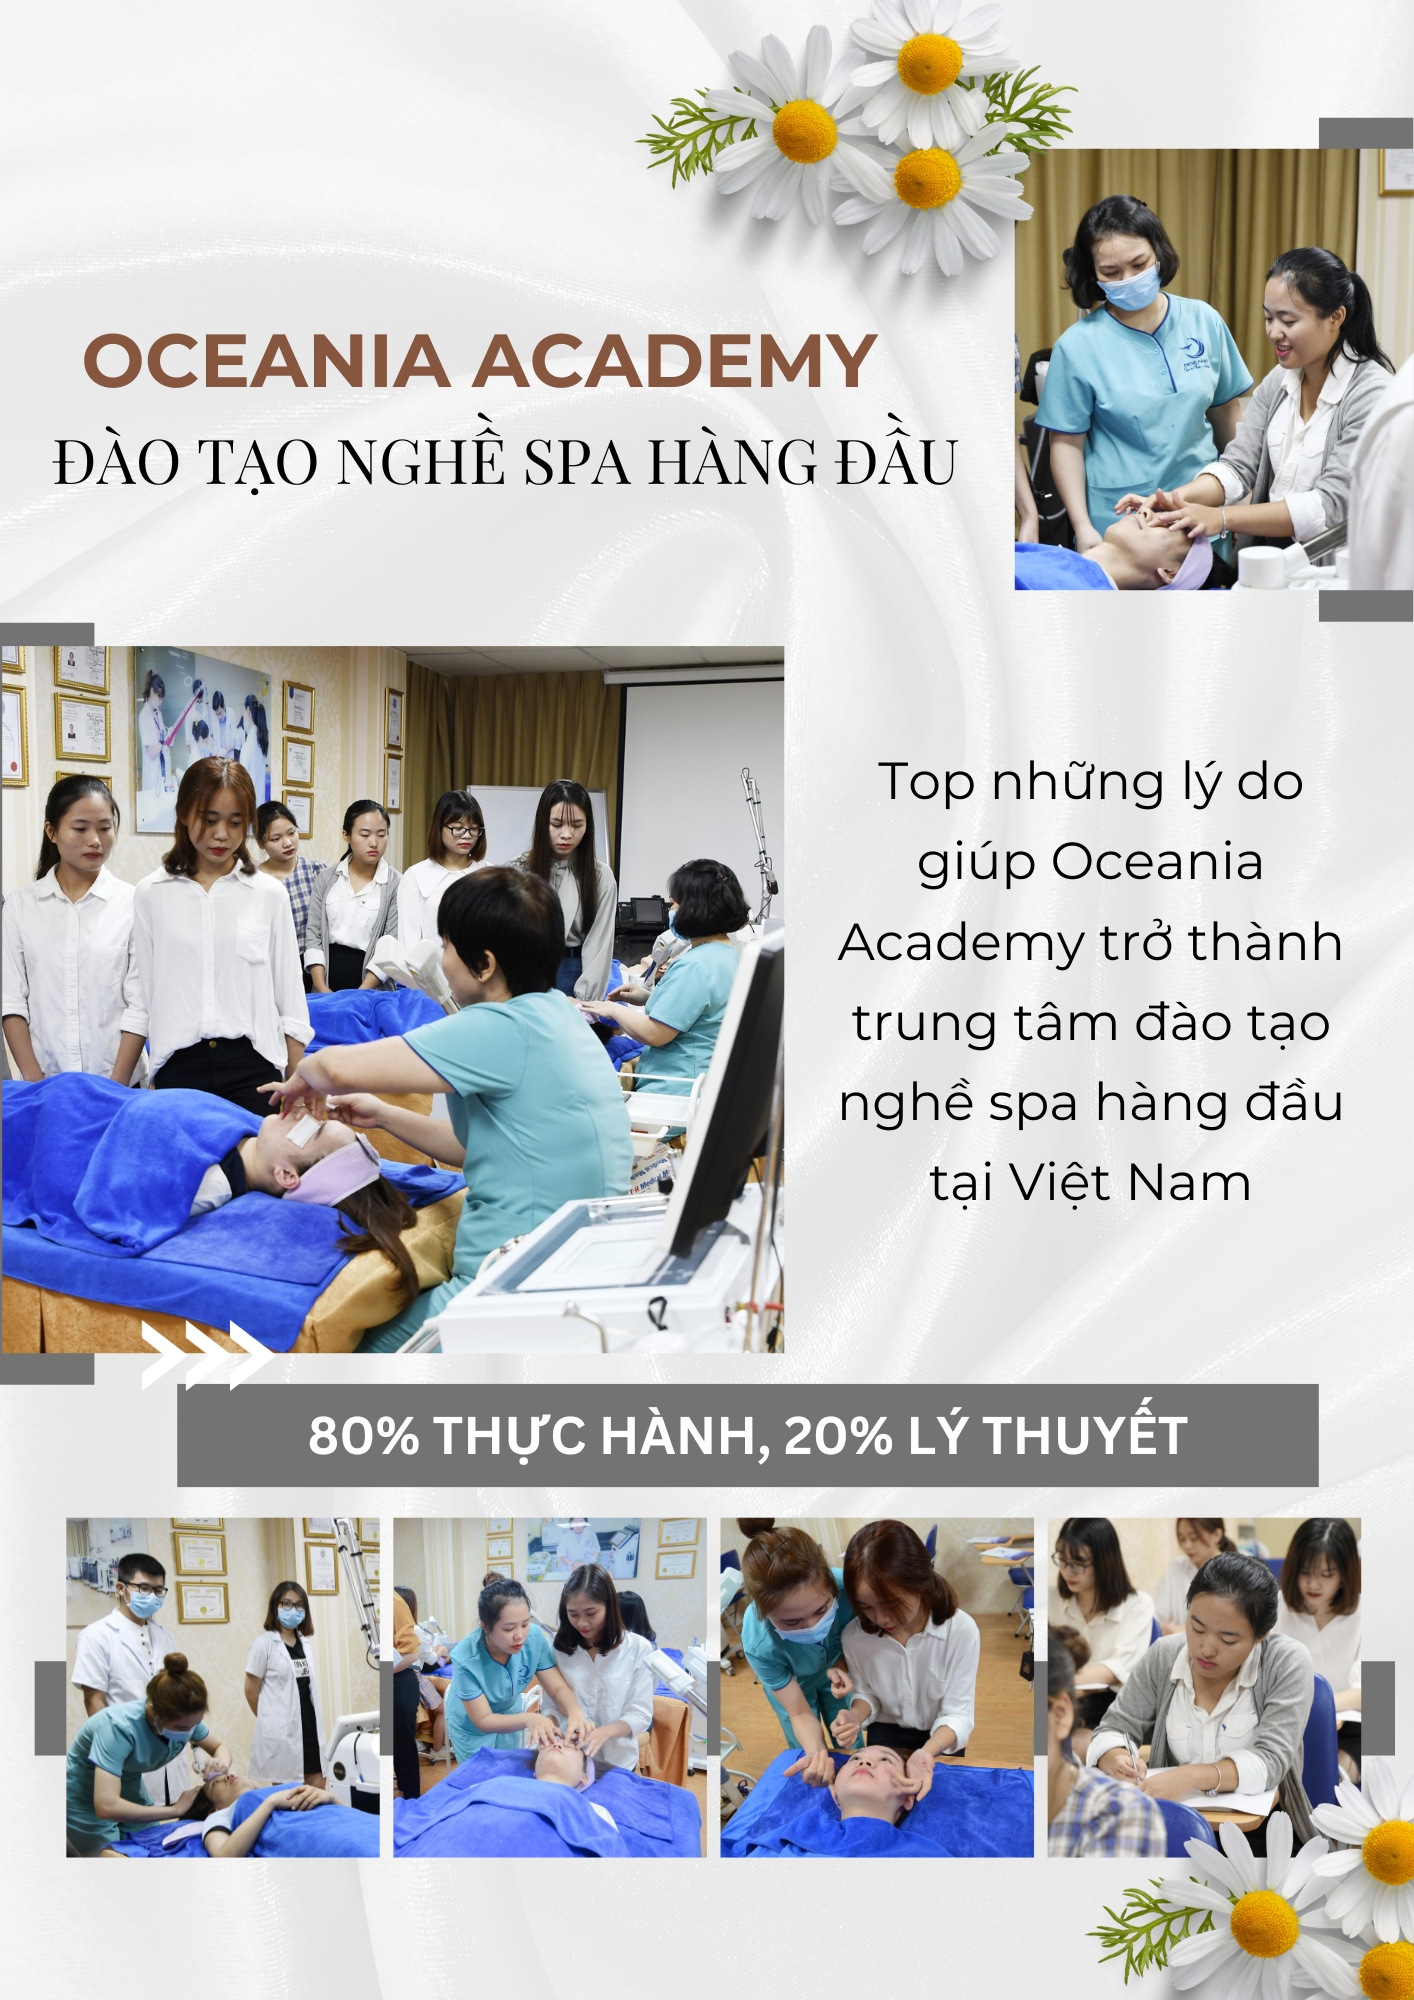 Oceania Academy ảnh 2